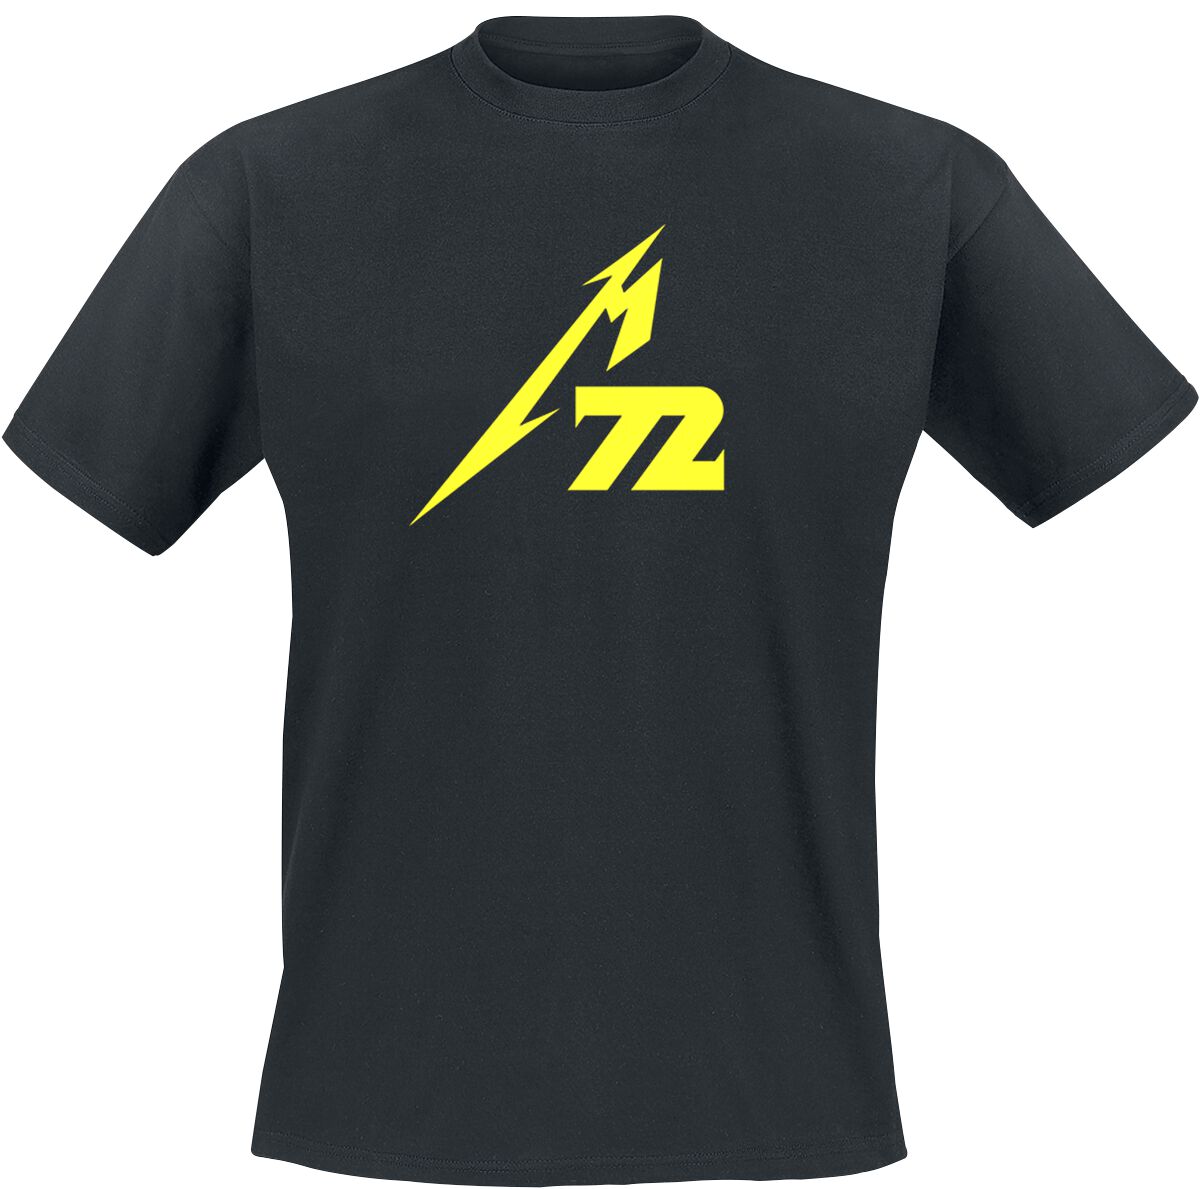 Metallica T-Shirt - Strobes (M72) - M bis 5XL - für Männer - Größe 4XL - schwarz  - Lizenziertes Merchandise!